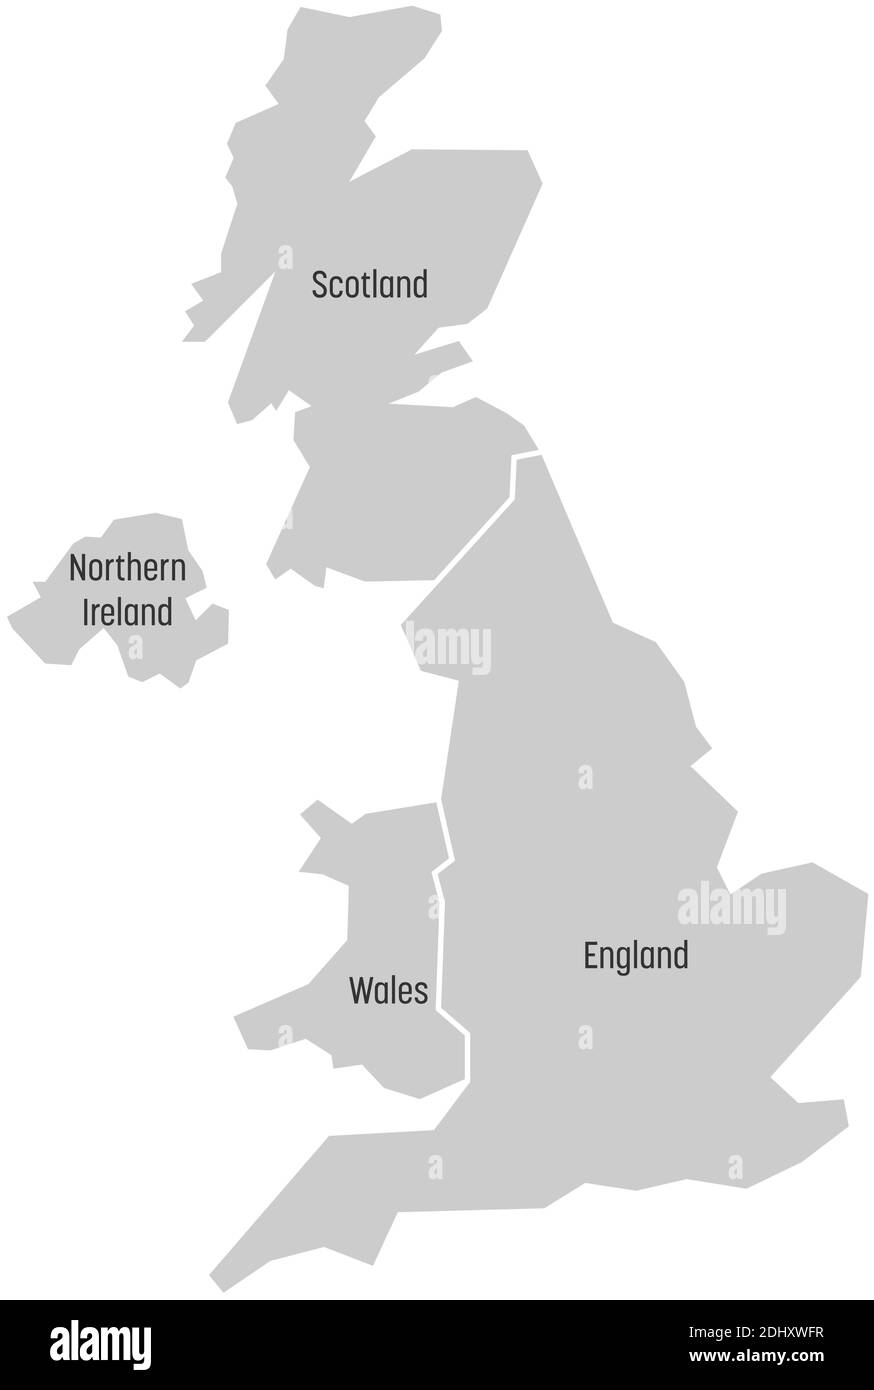 Royaume-Uni, alias Royaume-Uni, de Grande-Bretagne et d'Irlande du Nord. Divisé en quatre pays : l'Angleterre, le pays de Galles, l'Écosse et le ni. Illustration simple à vecteur plat. Illustration de Vecteur